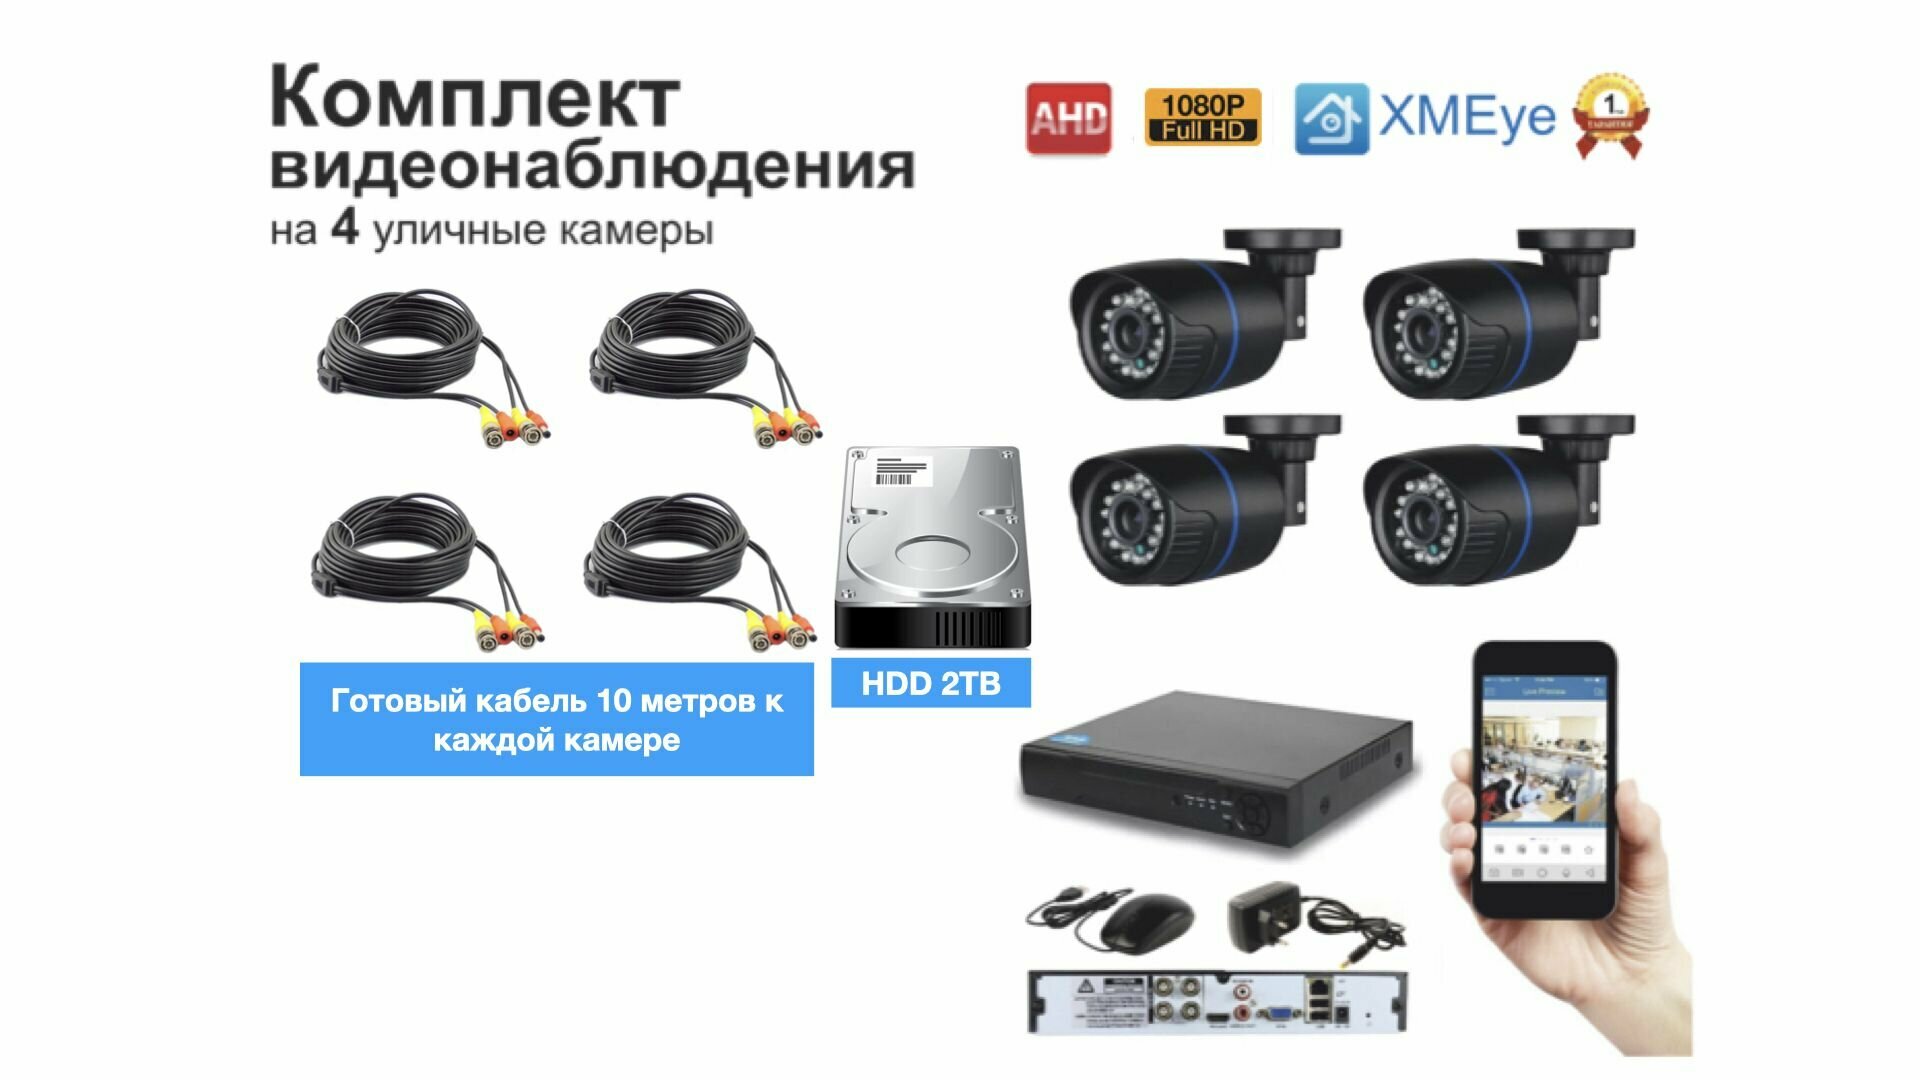 Полный готовый комплект видеонаблюдения на 4 камеры Full HD (KIT4AHD100B1080P_HDD2TB)